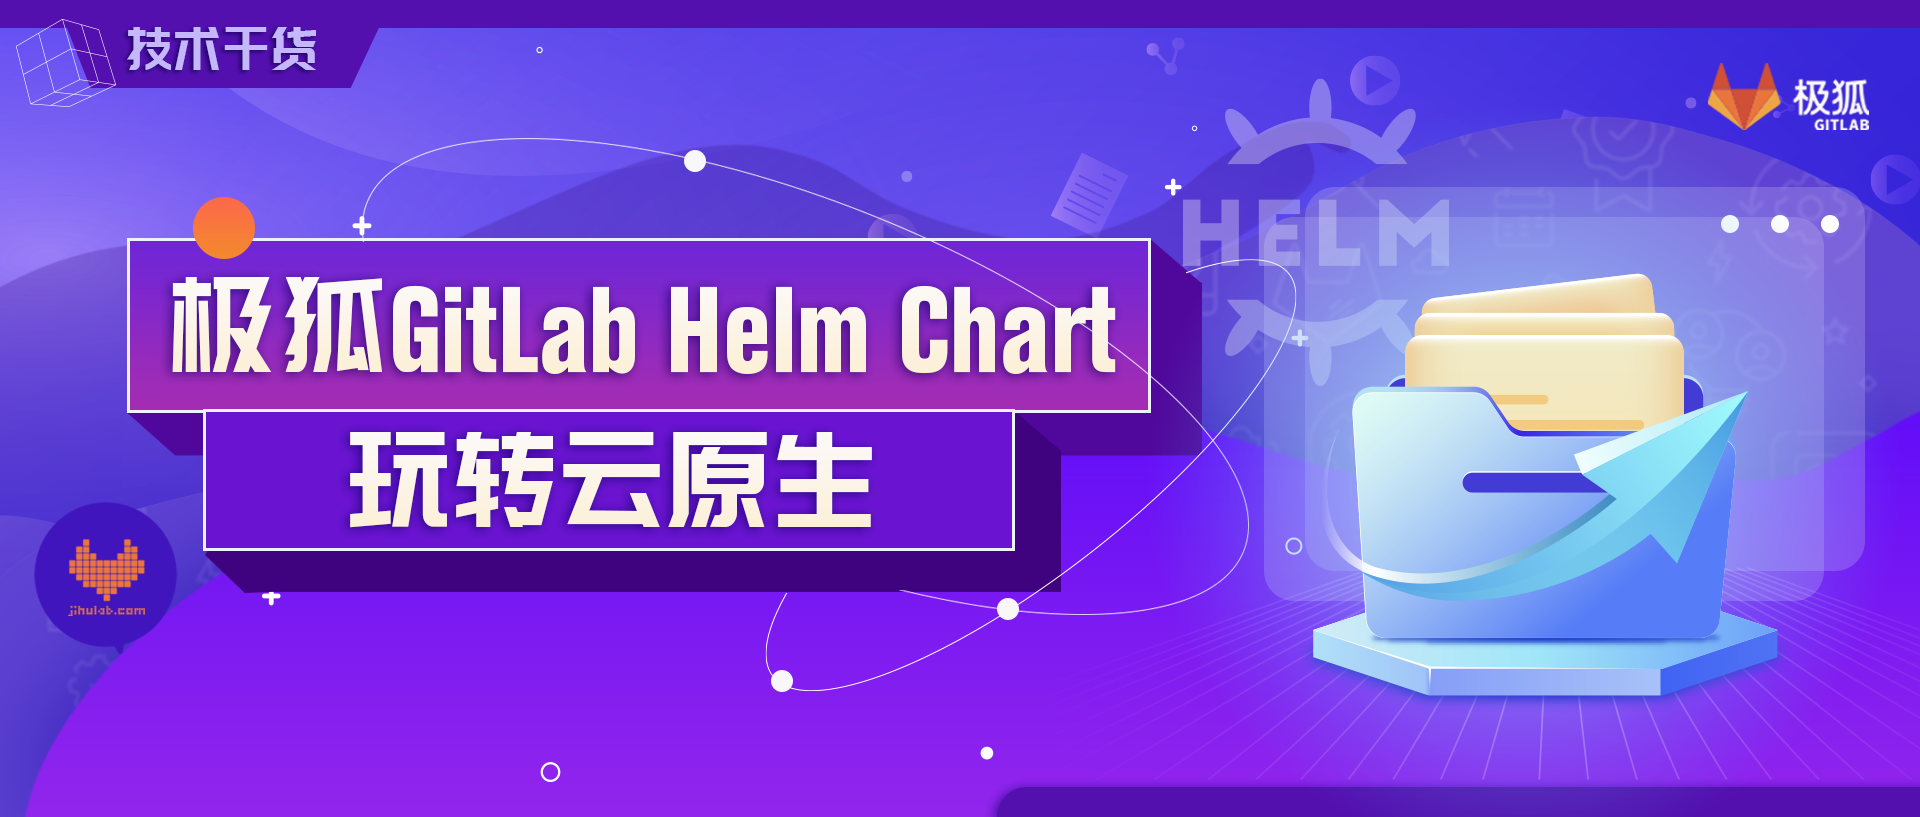 极狐GitLab Helm Chart 已上线，玩转云原生极狐GitLab！